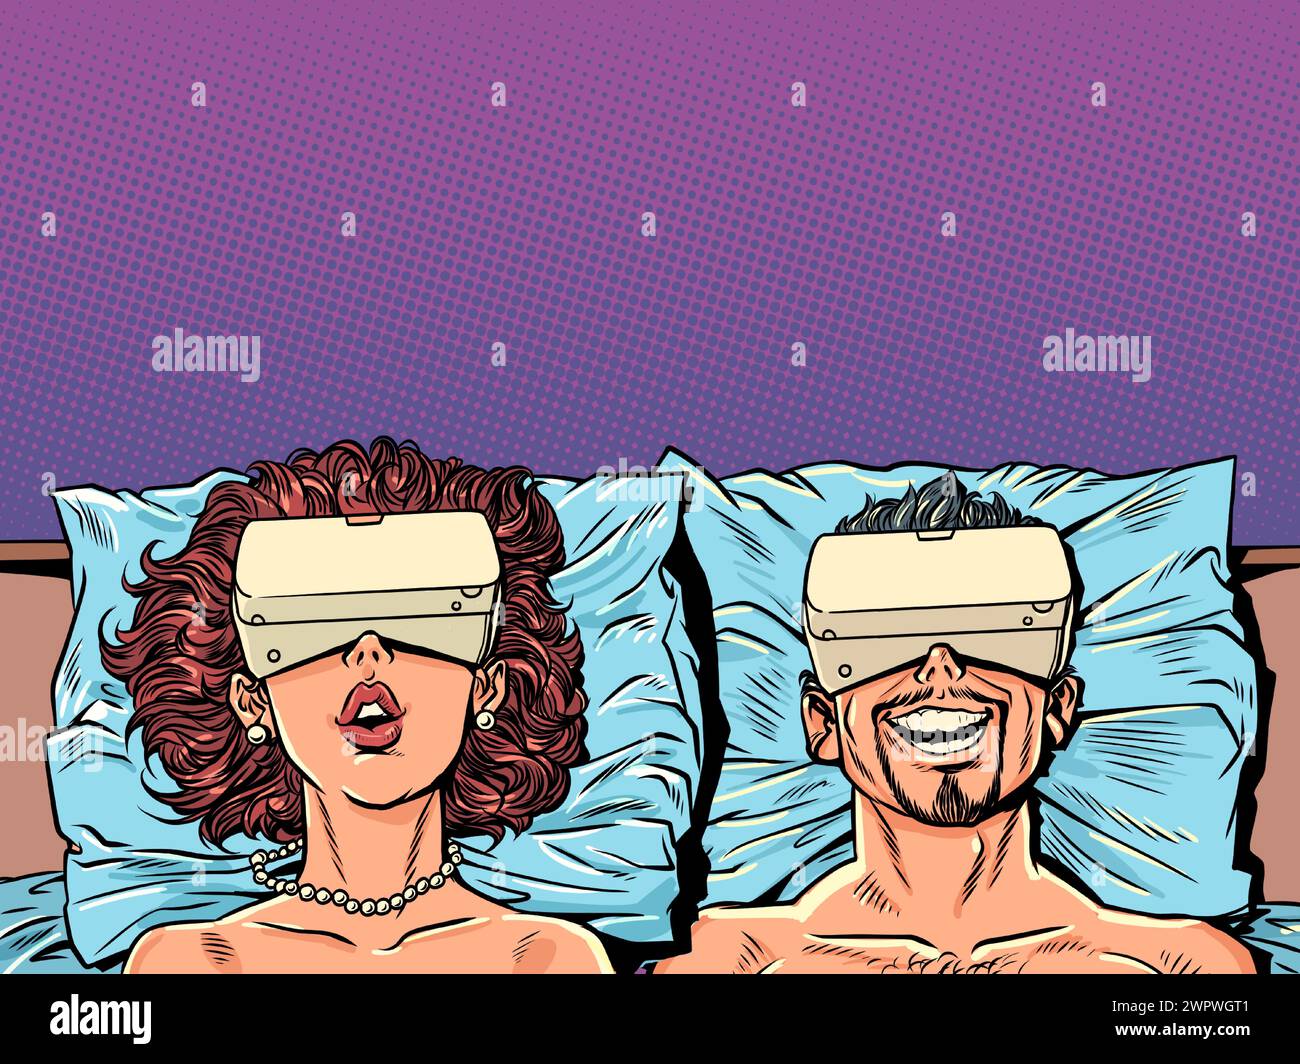 Ein Mann und eine Frau liegen mit VR-Geräten im Bett. Alternative virtuelle Realität und Interaktion mit ihr. Neue technologische Objekte als mod-Problem Stock Vektor